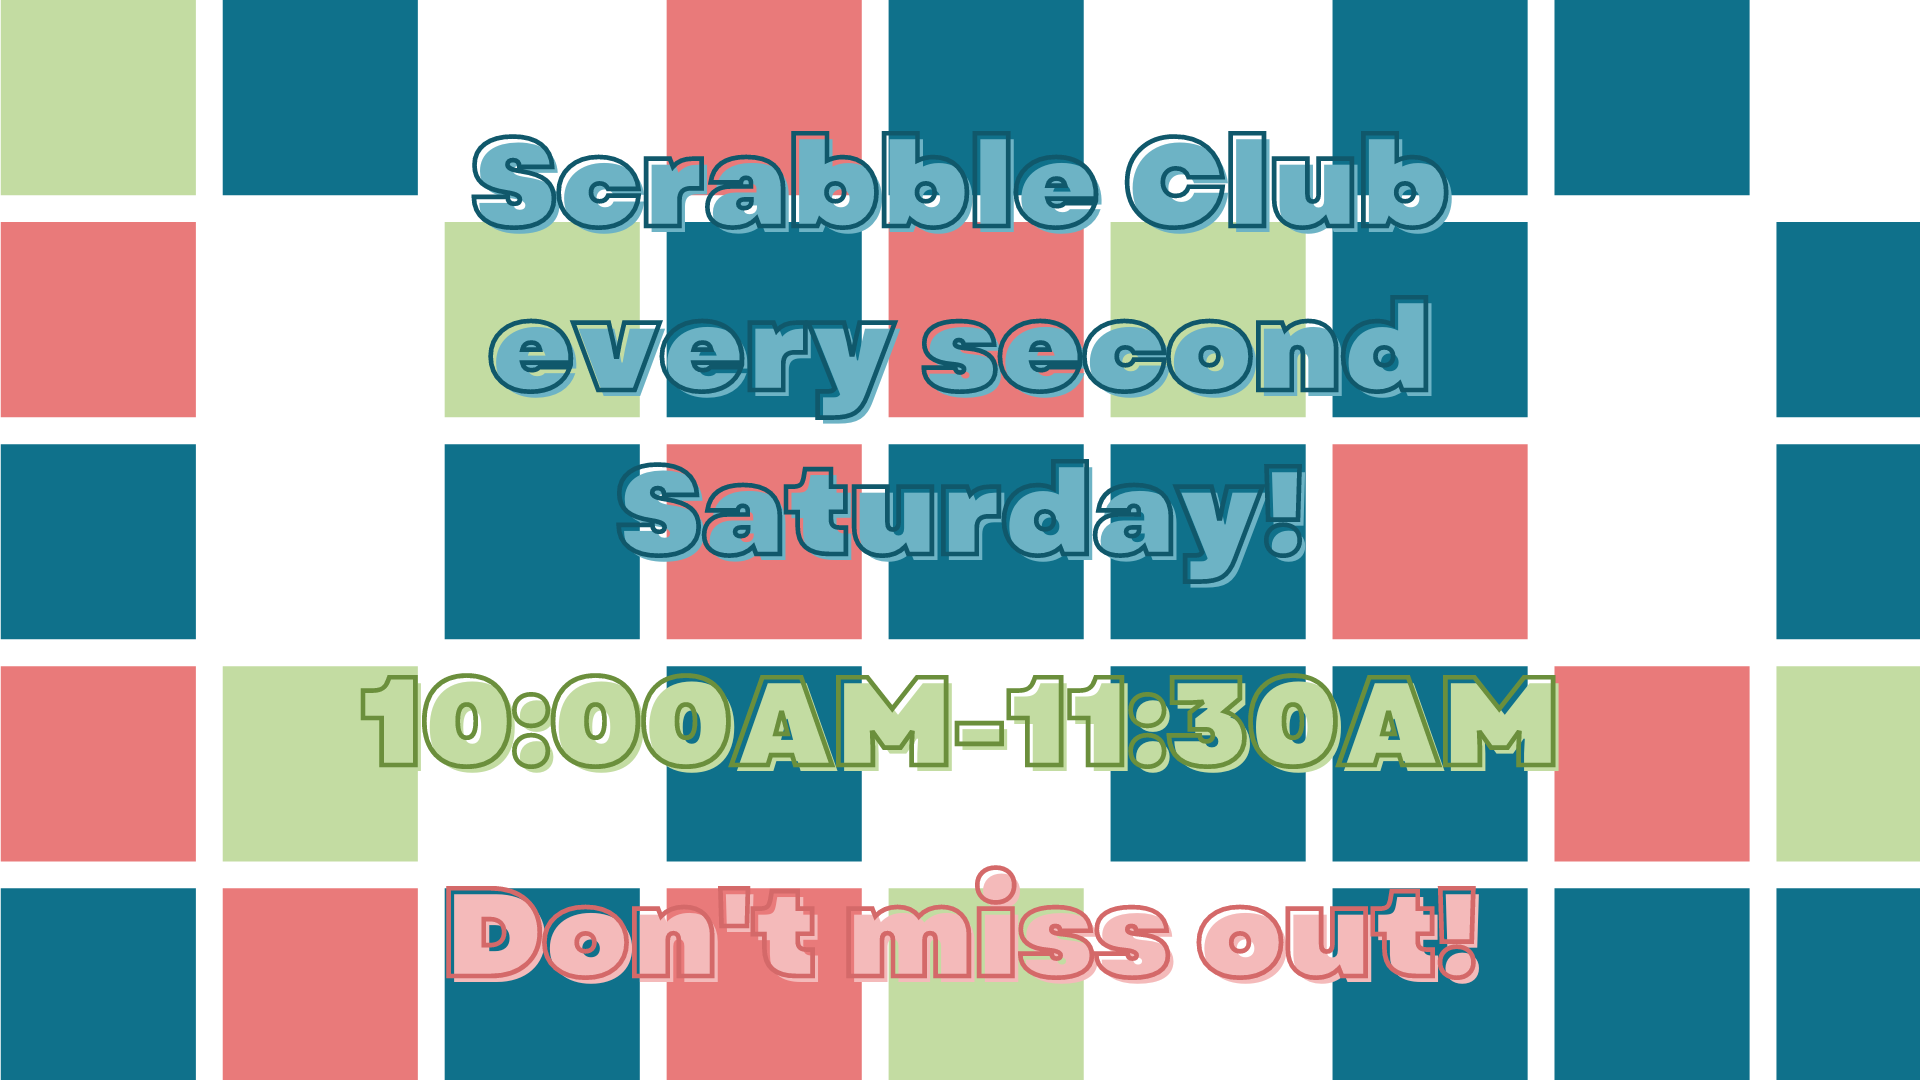 Scrabble Club Graphic